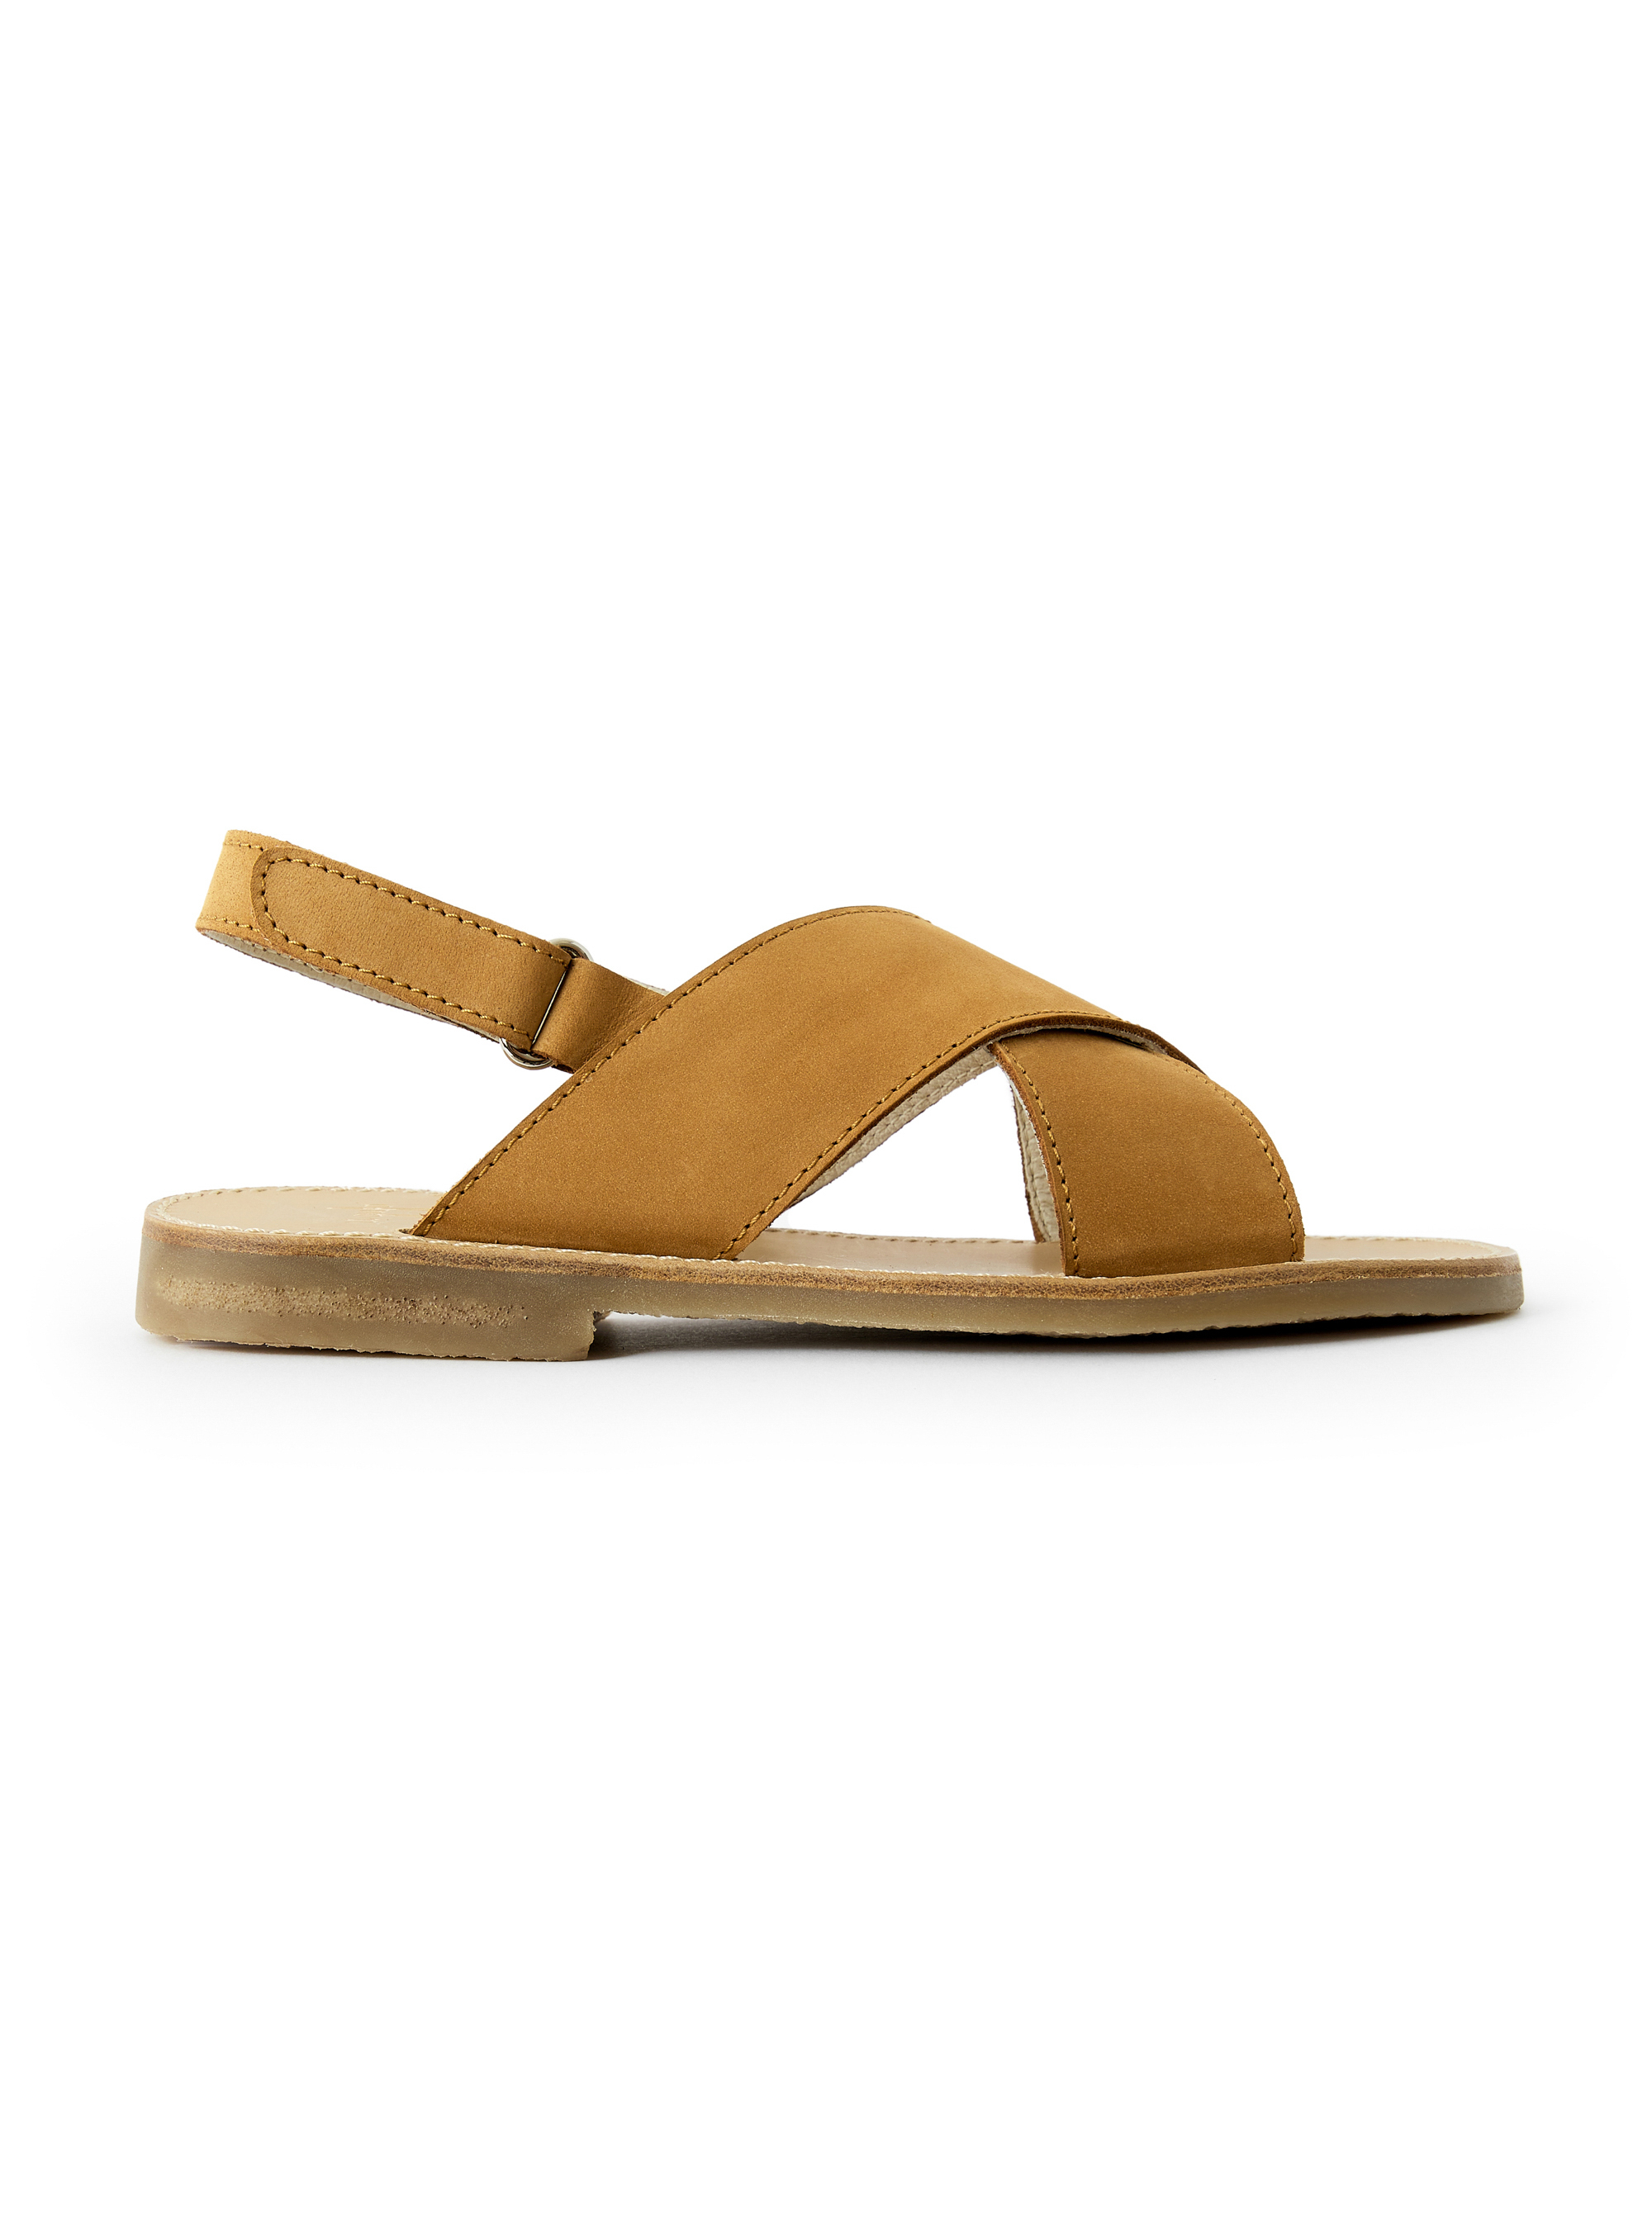 Beigefarbene Sandale mit gekreuzten Riemen - Braun | Il Gufo